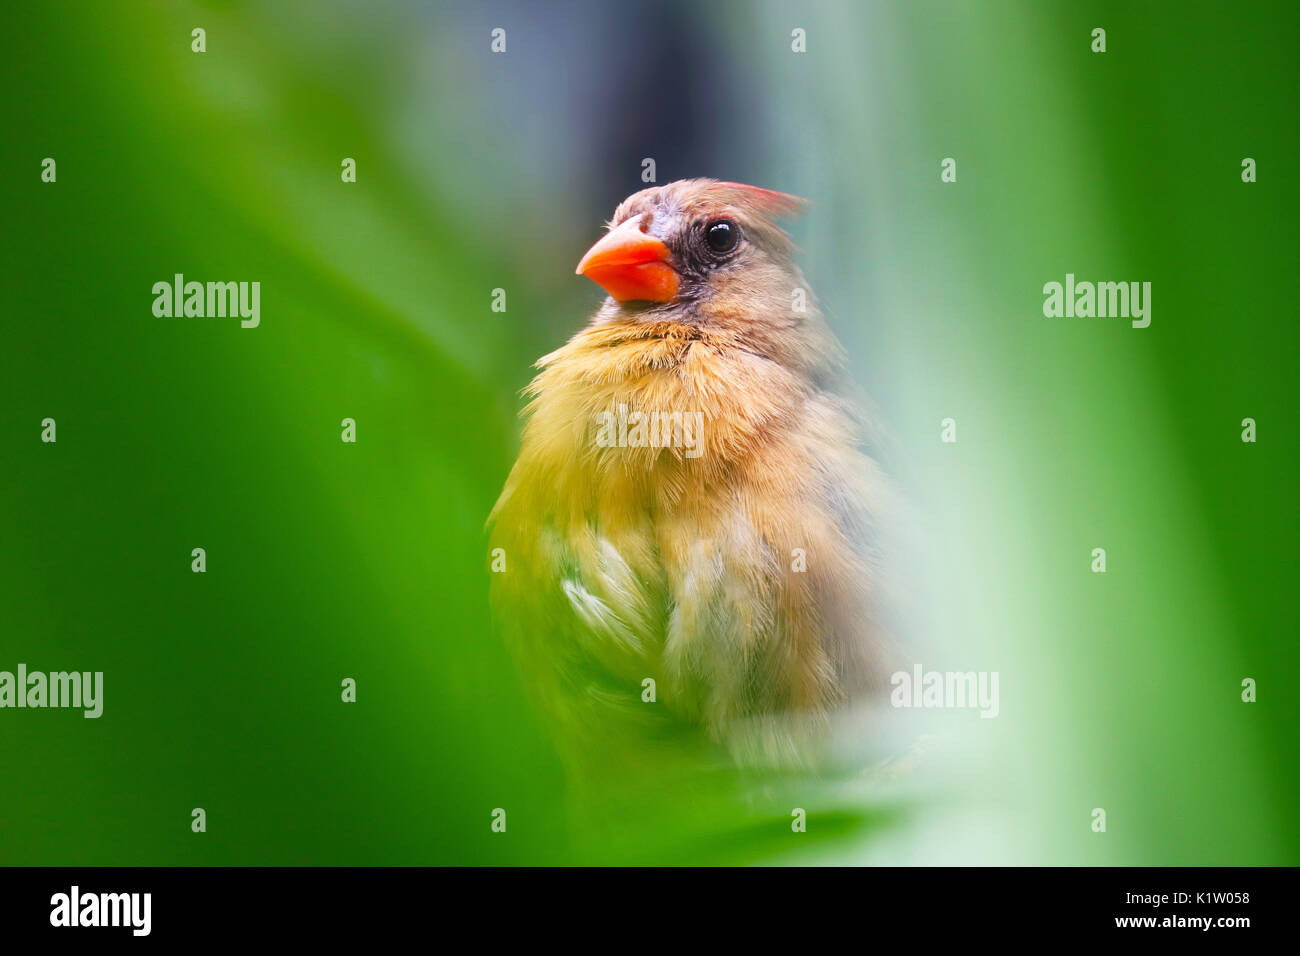 female northern cardinal bird hidden between blurry green jungle forest leaves Stock Photo